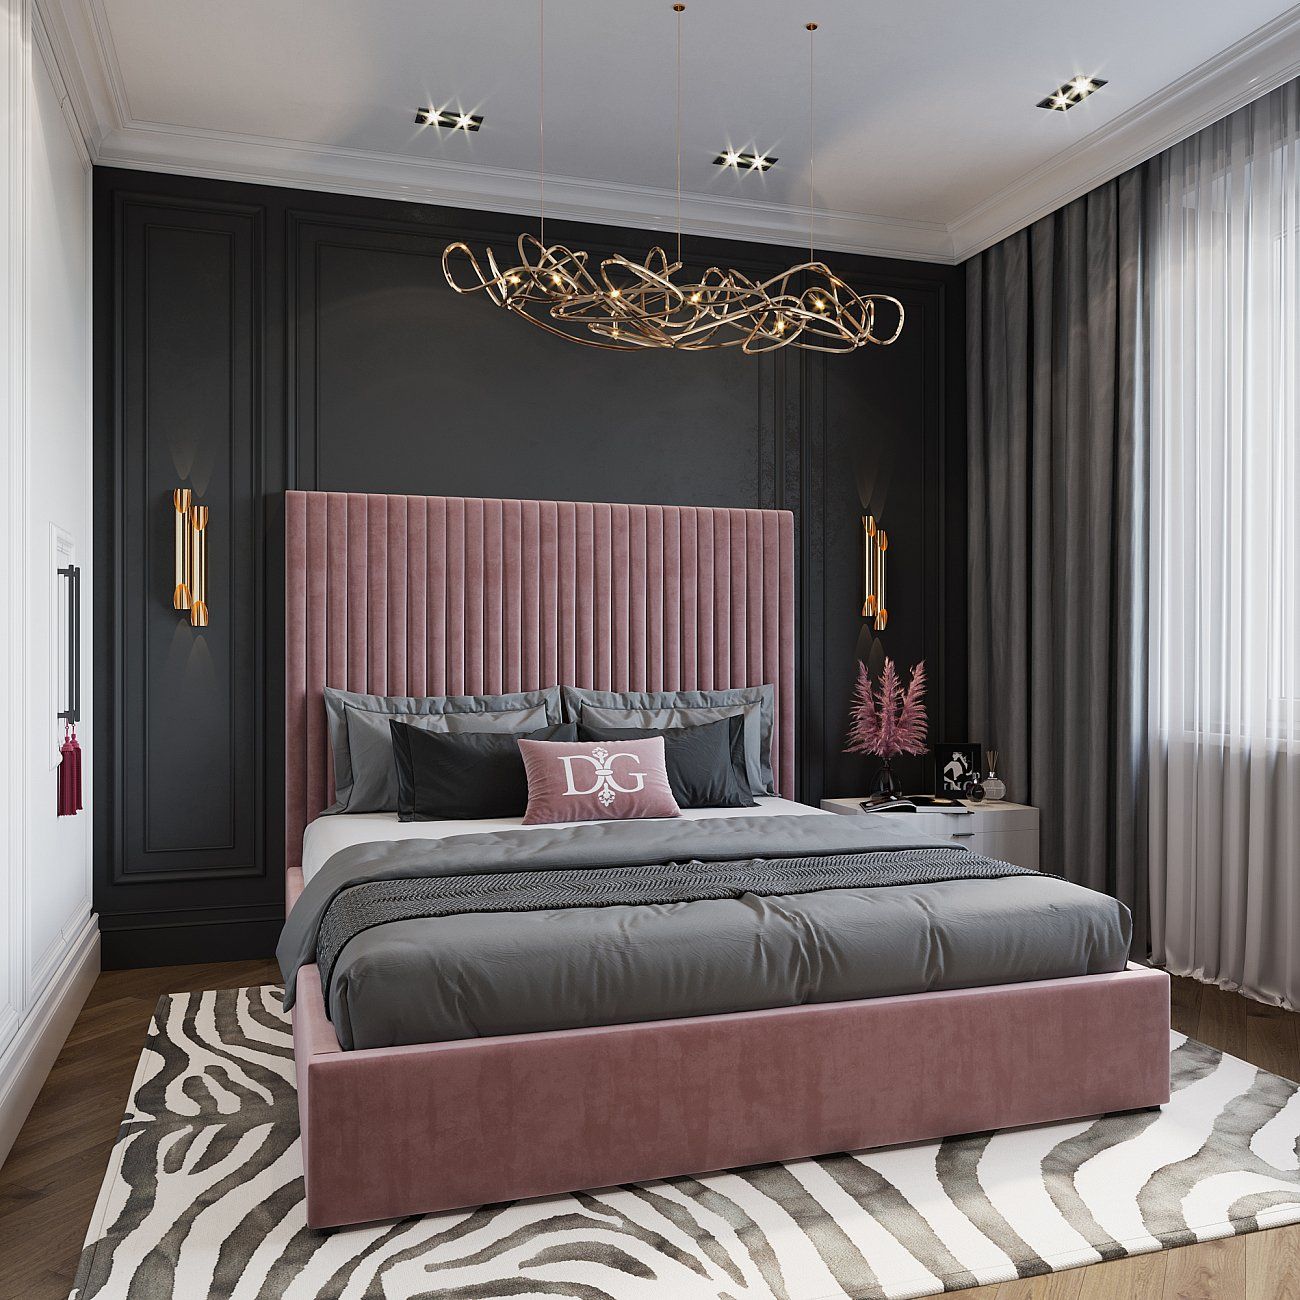 Кровать двуспальная 180х200 см жемчужно-розовая Mora